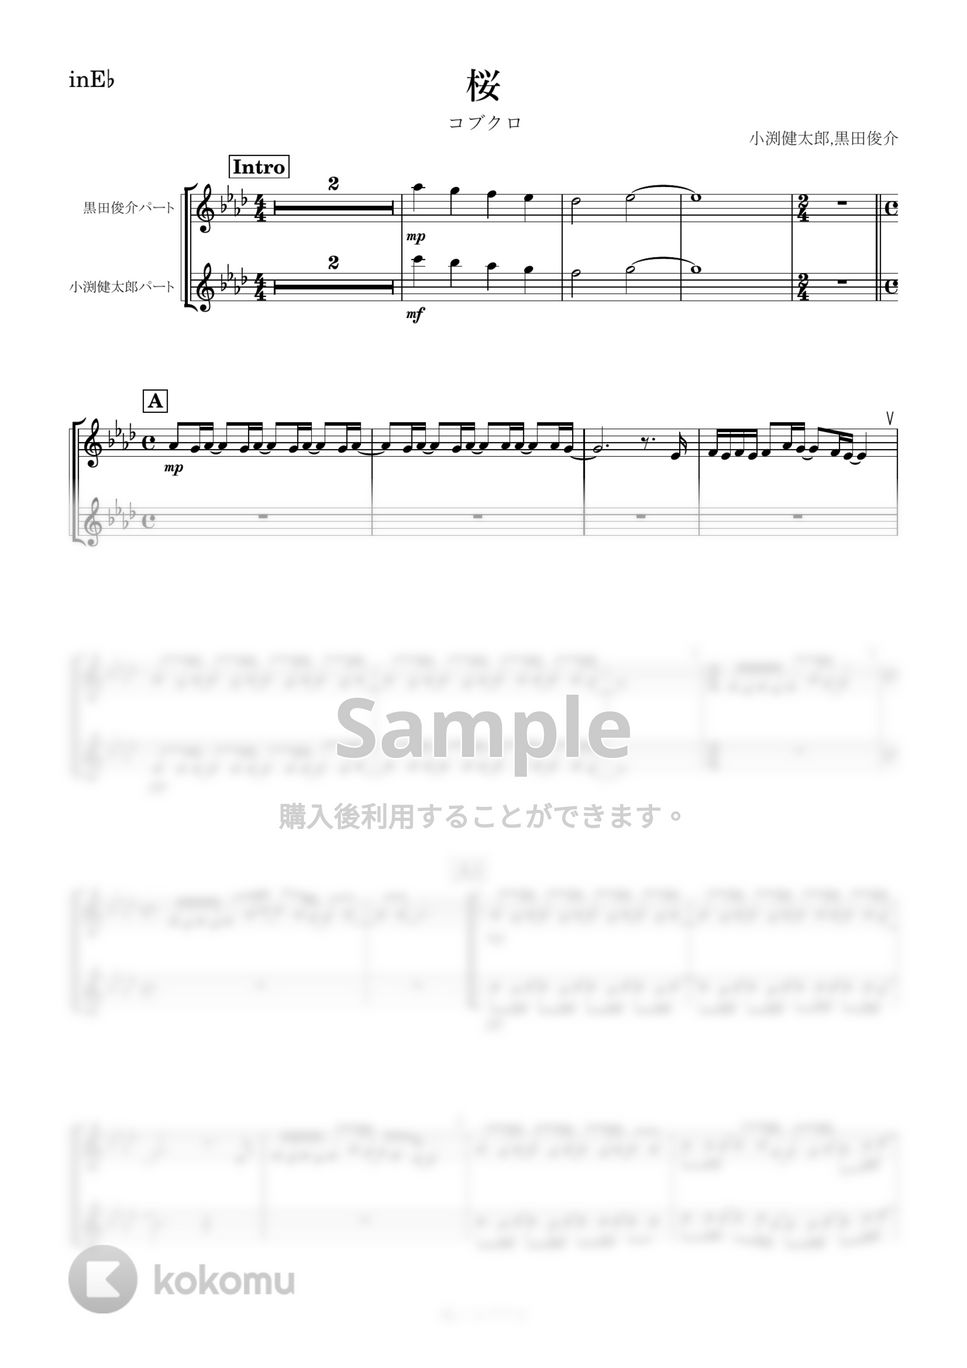 コブクロ - 桜 (E♭) by kanamusic